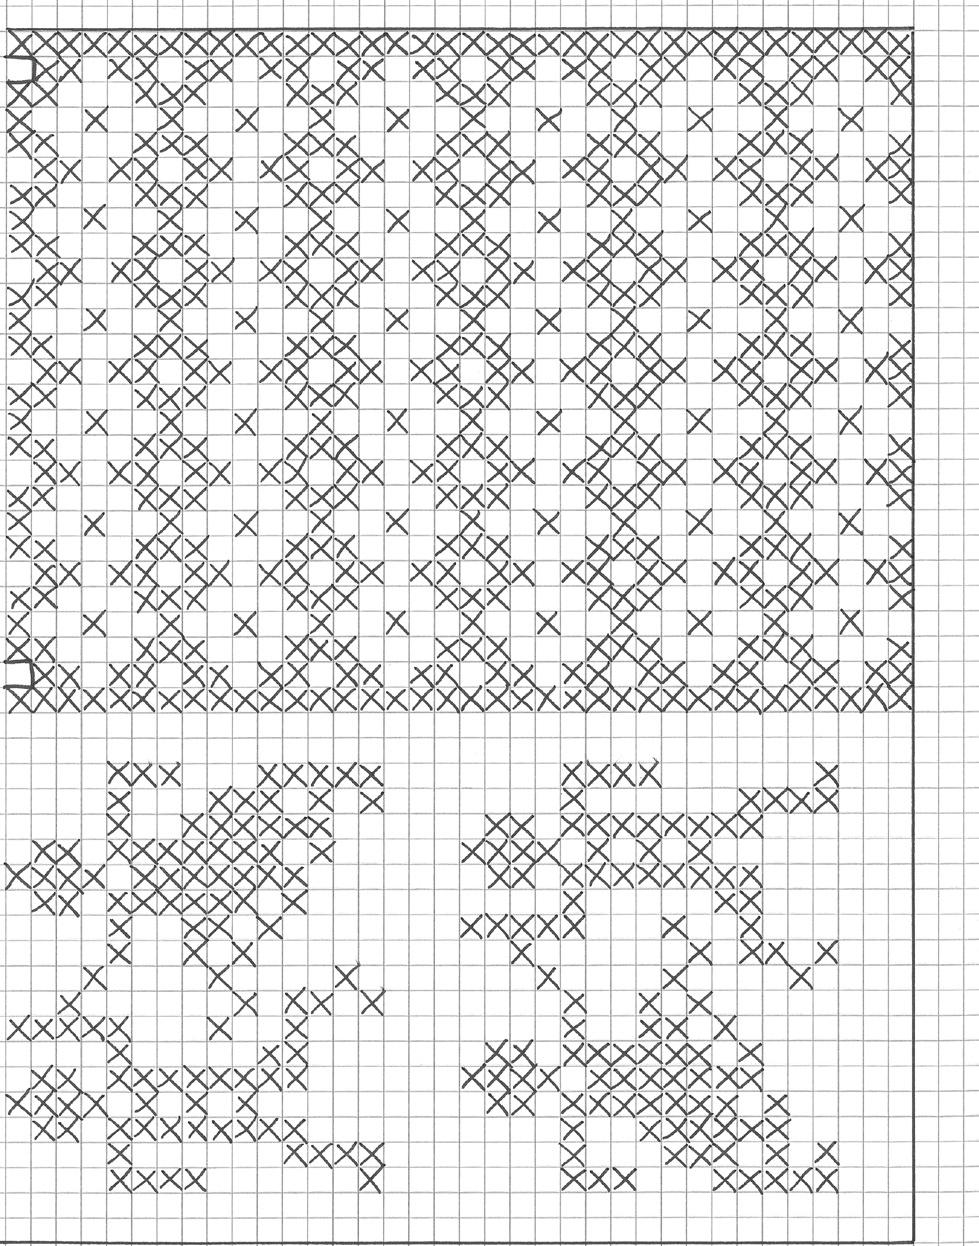 Lue med Dansebord Lue med Dansebord 23402 Danseborden er et gammelt mønster som vi har funnet i Anniken Sibbern Bøhns bok. Vi har kombinert denne danseborden med et eget komponert mønster.